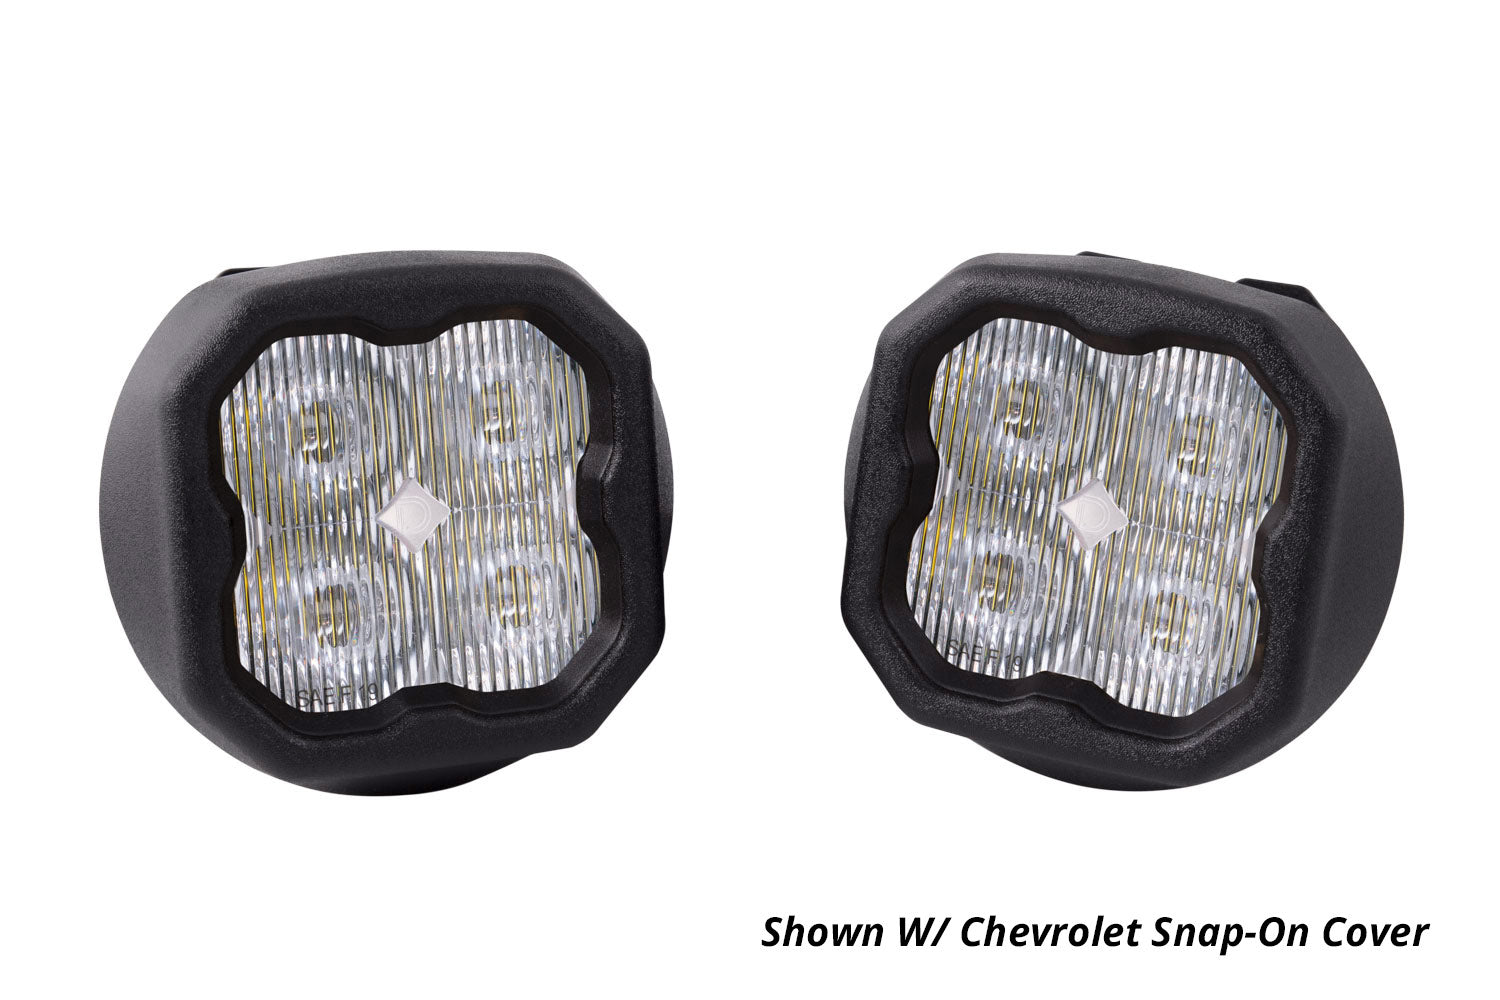 SS3 LED Fog Light Kit for 2007-2015 Chevrolet Avalanche White SAE/DOT Driving Pro Diode Dynamics